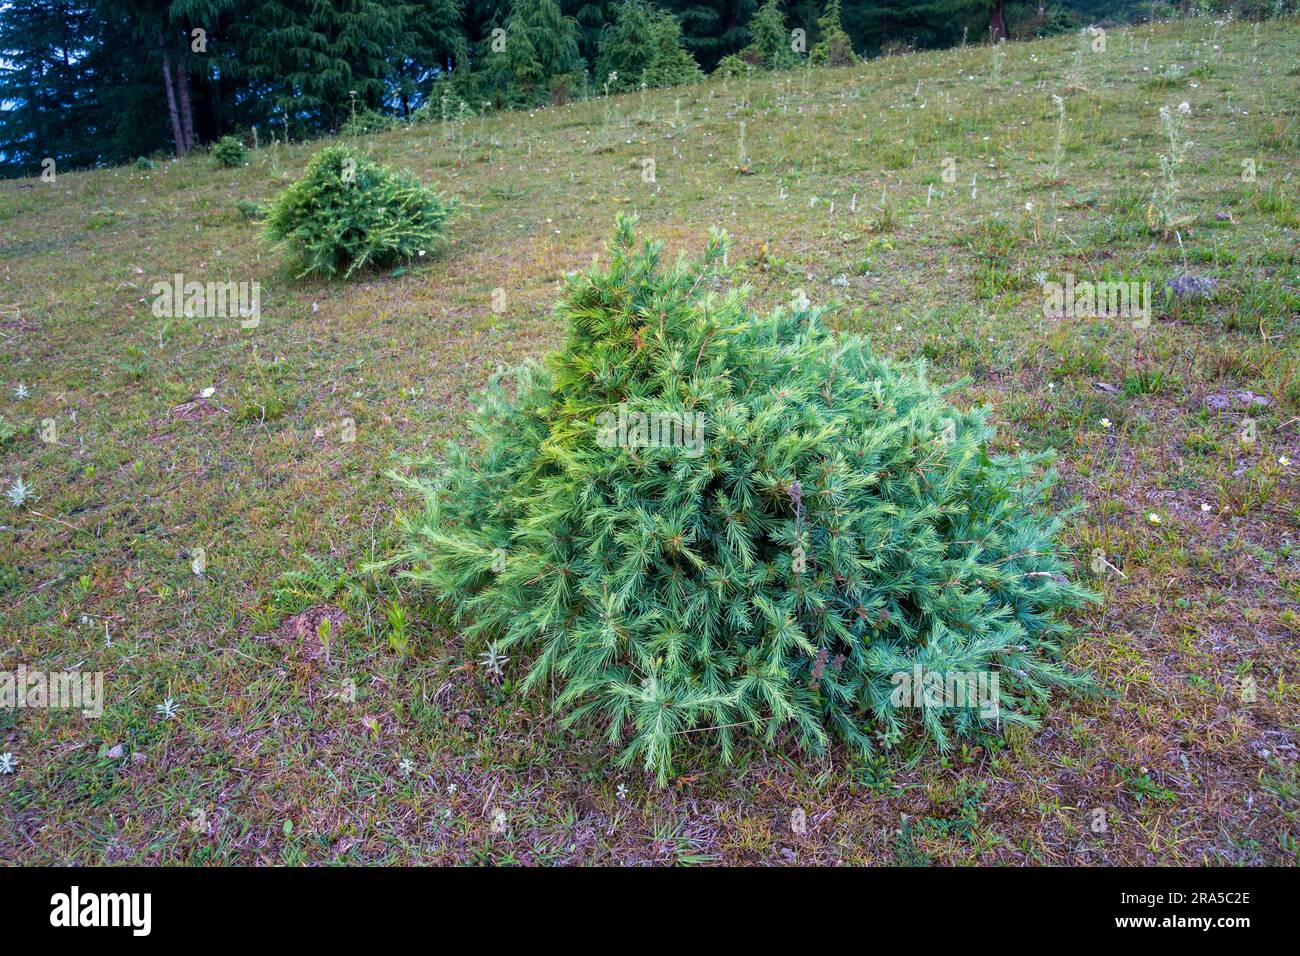 Cathaya, un genre de la famille des pins, Pinaceae, avec une espèce vivante connue, Cathaya argyrophylla. Région himalayenne d'Uttarakhand. Banque D'Images